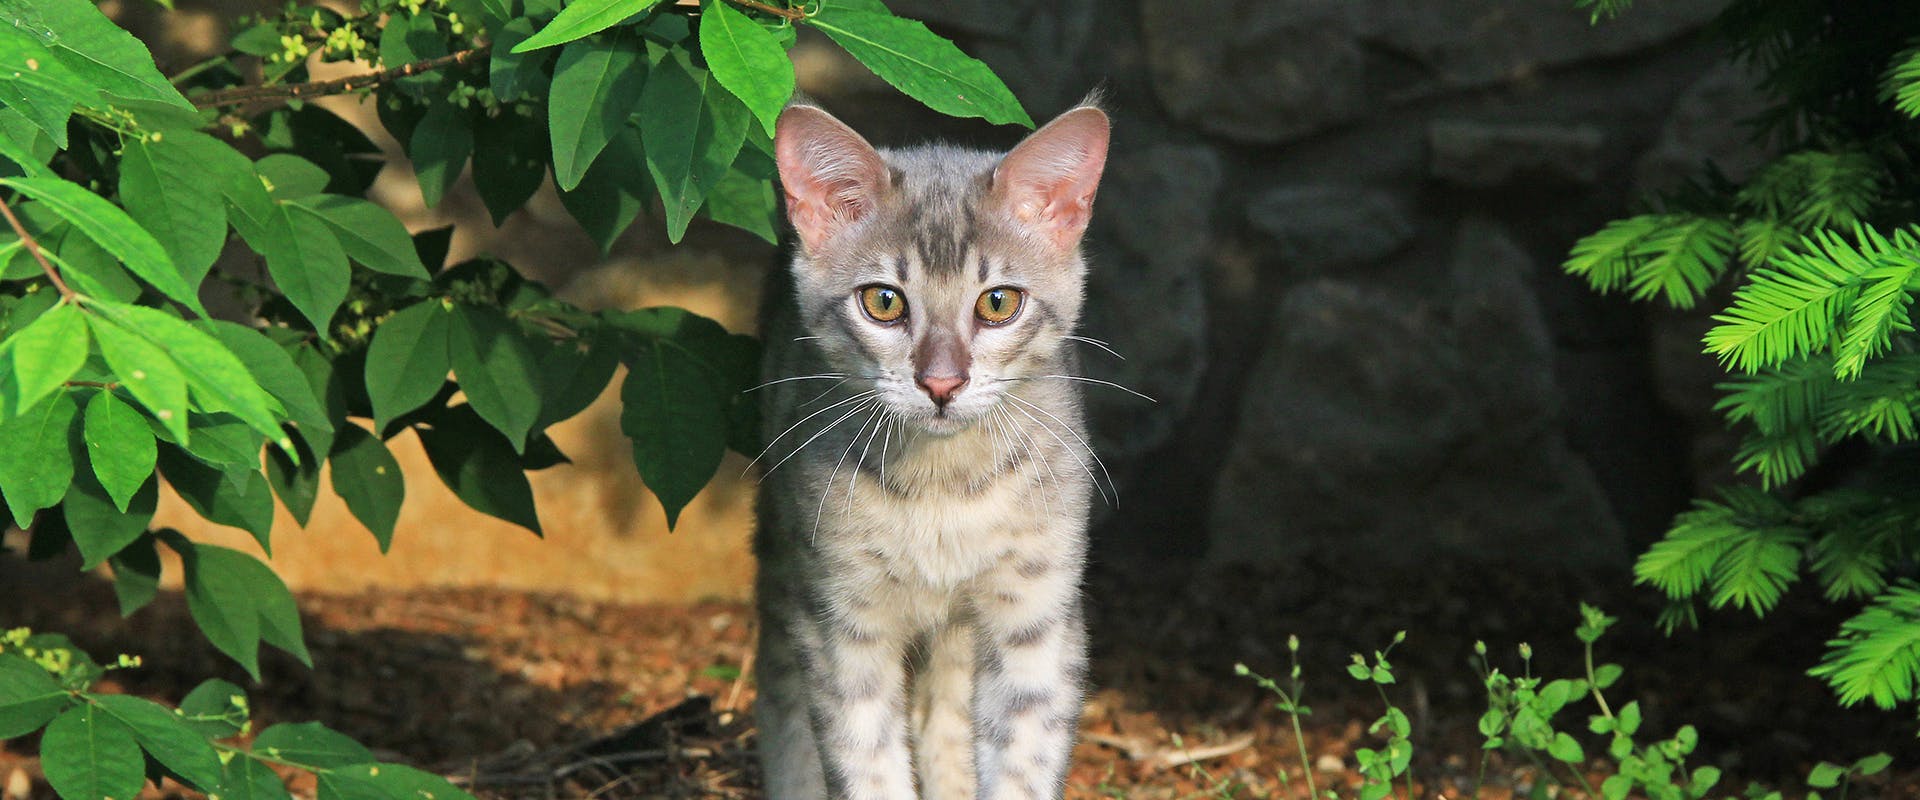 A cute Savannah kitten